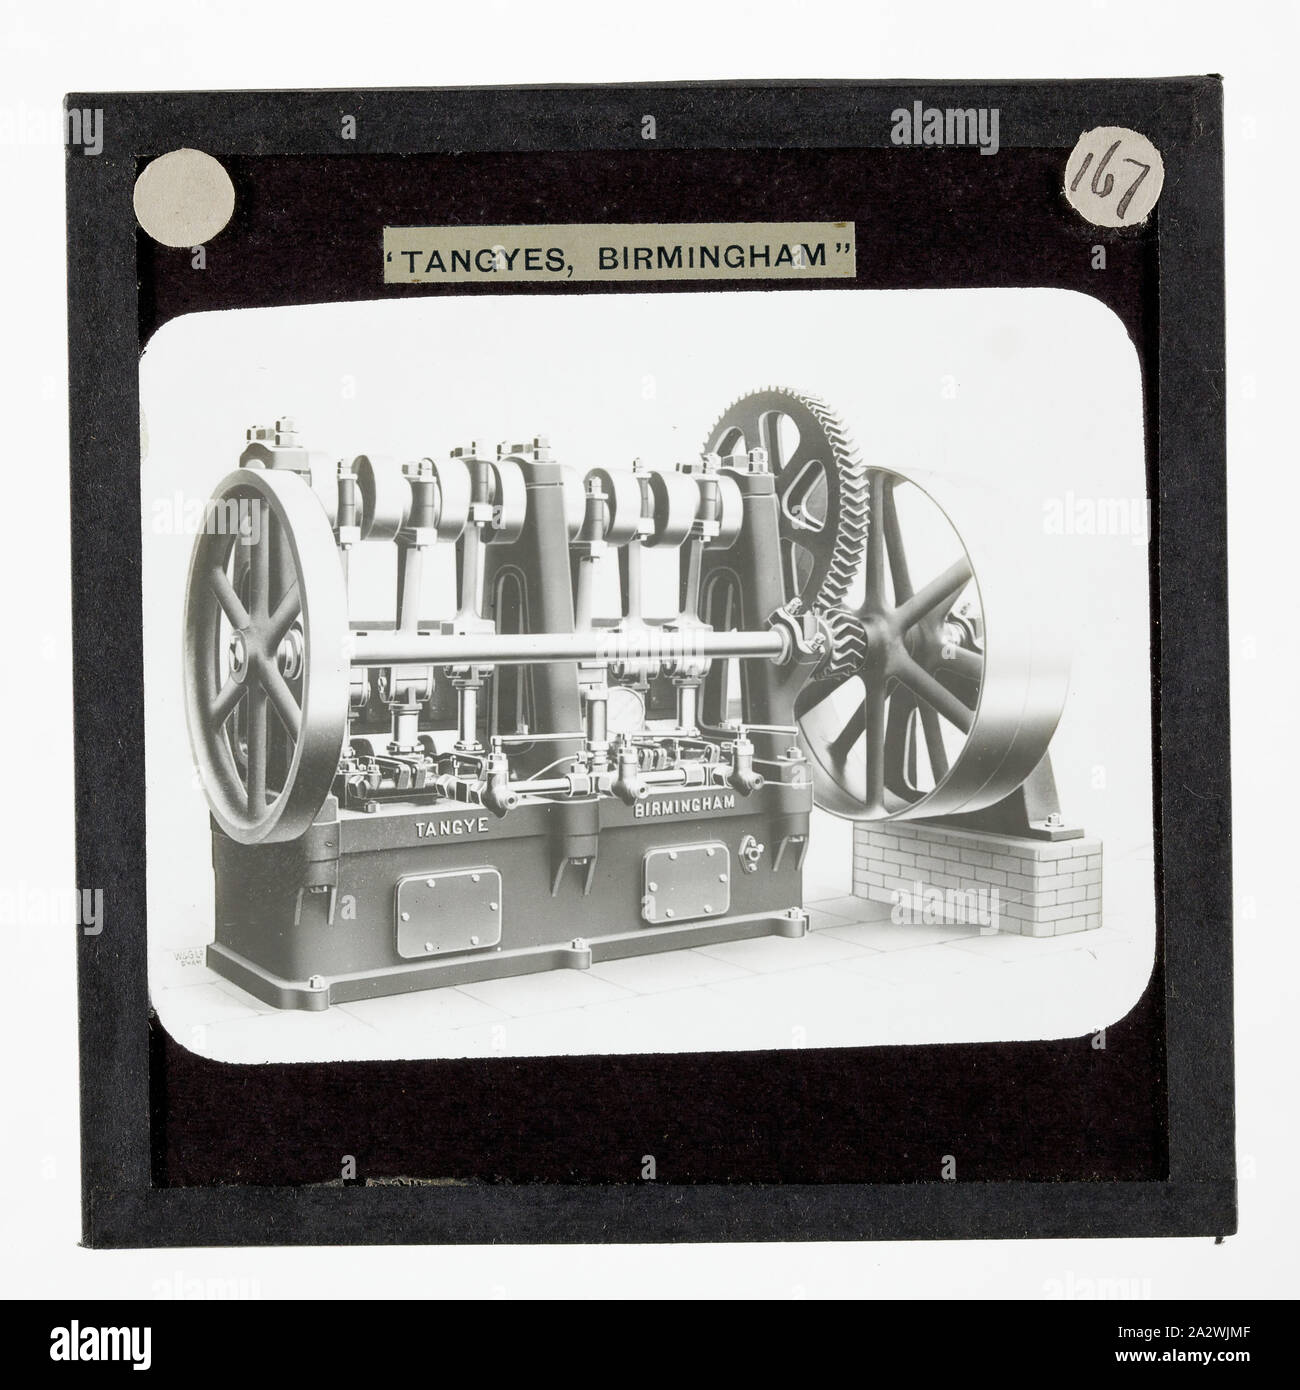 Diapositive - Tangyes Three-Throw Ltd, associé, Pompe verticale orientée vers 1910, l'un de 239 diapositives sur verre Verre produits fabriqués par Tangyes ingénieurs limitée de Birmingham, Angleterre. Les images comprennent divers produits tels que les moteurs, pompes centrifuges, pompes hydrauliques, les producteurs de gaz, machines d'essais des matériaux, presses, machines-outils, vérins hydrauliques etc. Tangyes était une entreprise qui a fonctionné de 1857 à 1957. Ils ont produit une grande variété de génie Banque D'Images